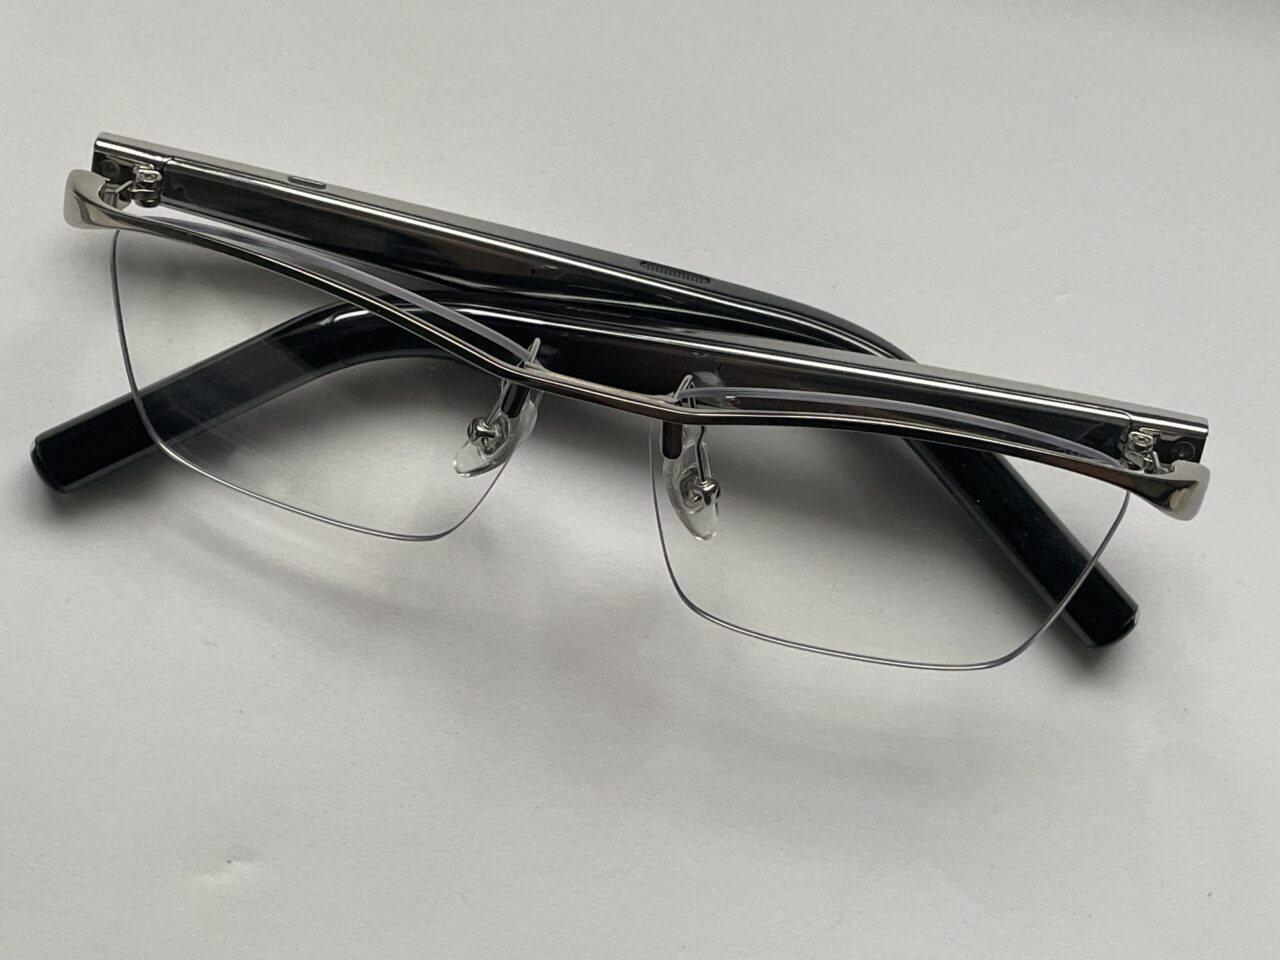 Czarne, półramkowe okulary korekcyjne z przezroczystymi soczewkami, leżące na białym tle.